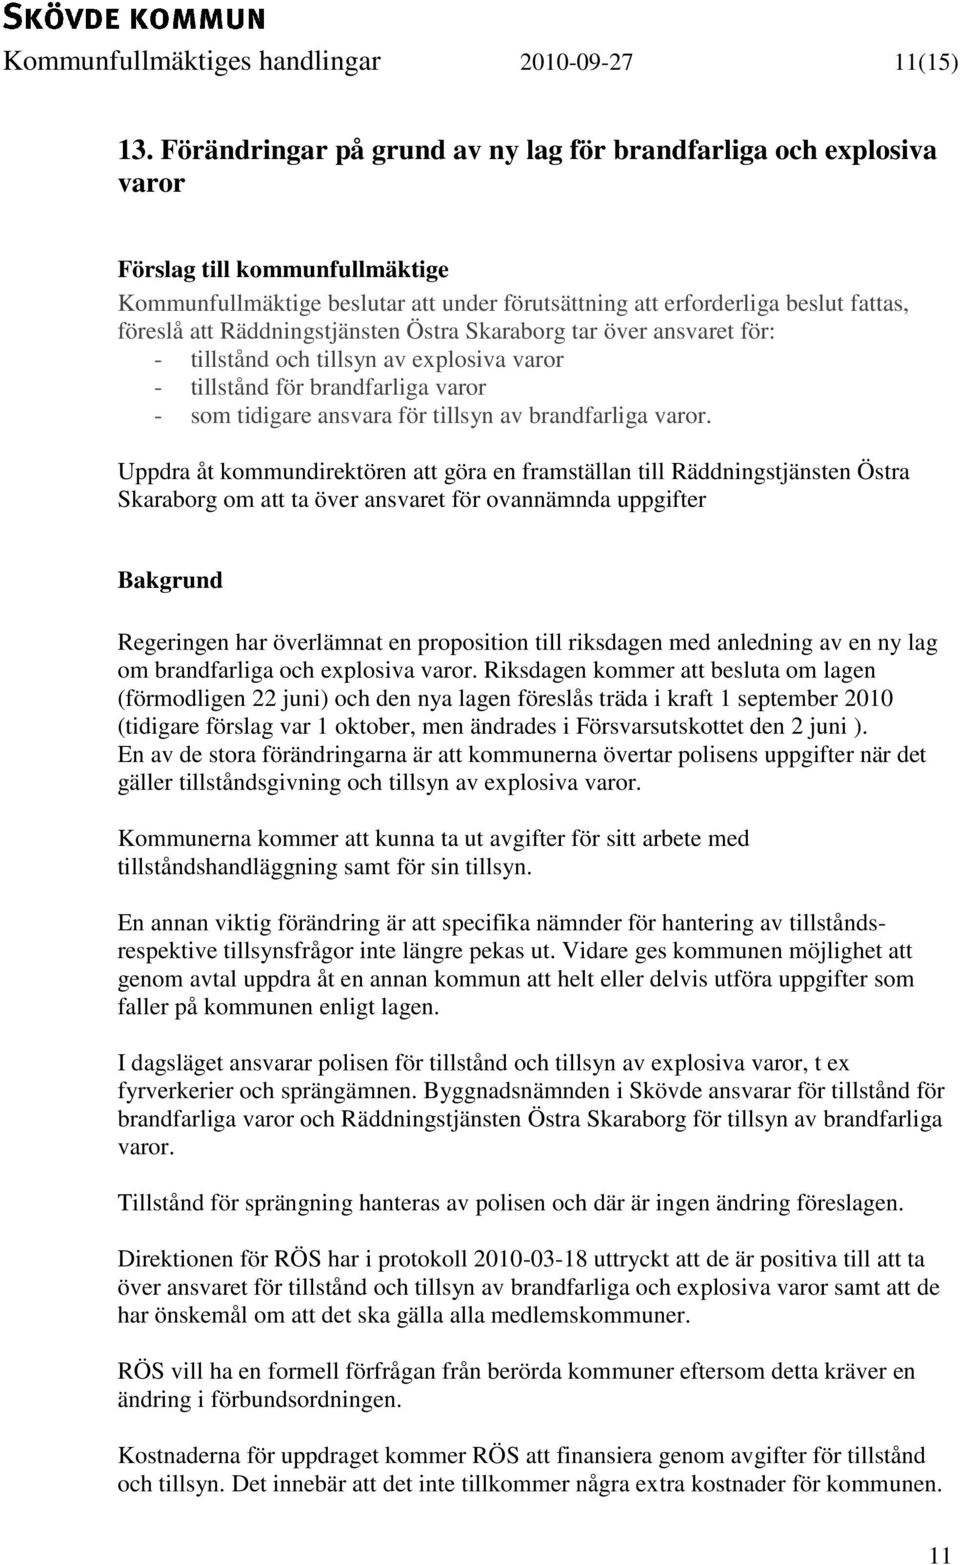 Räddningstjänsten Östra Skaraborg tar över ansvaret för: - tillstånd och tillsyn av explosiva varor - tillstånd för brandfarliga varor - som tidigare ansvara för tillsyn av brandfarliga varor.